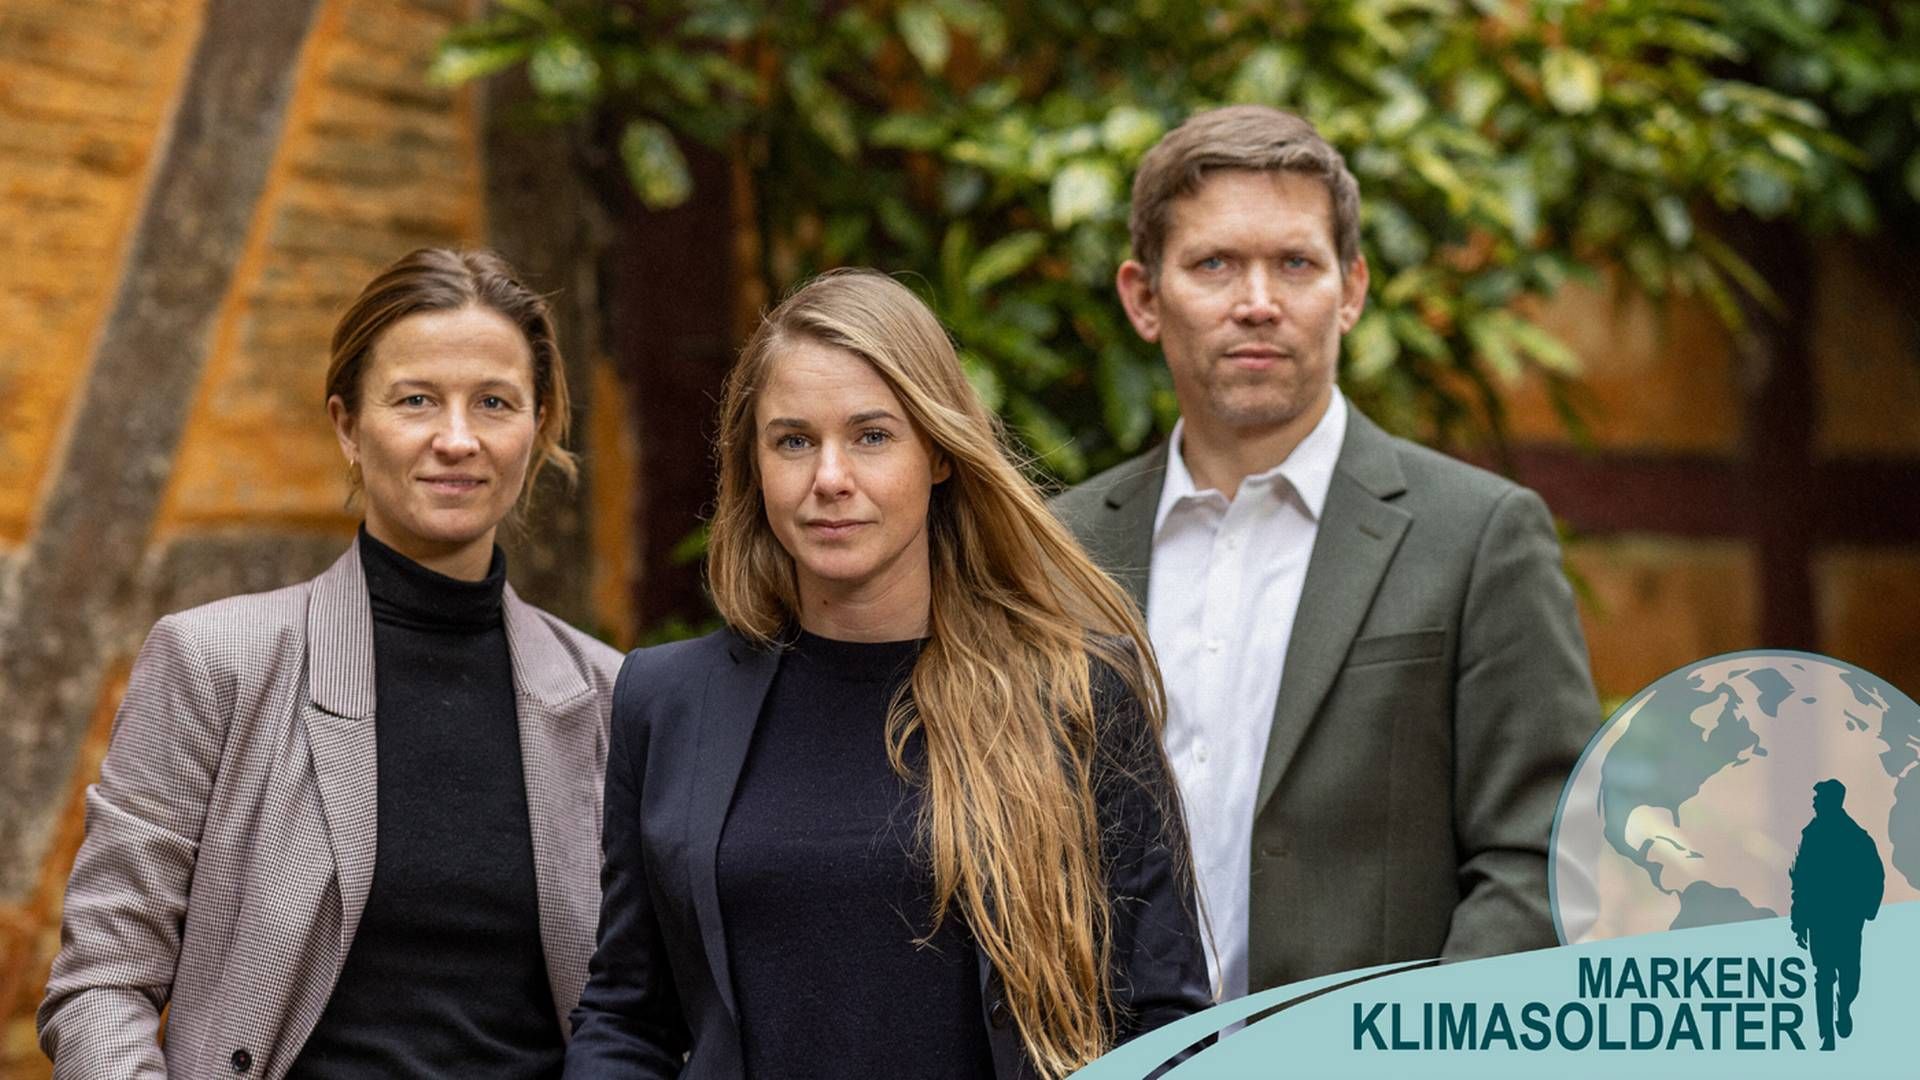 Fra venstre: Julie Fahler (medstifter), Ida Boesen (medstifter) og Simon Haldrup (adm. direktør) udgør ledelsen i Agreena, der for nylig rejste 150 mio. kr. i en kapitalrunde. | Foto: PR/Agreena, grafik: Peter Thomsen